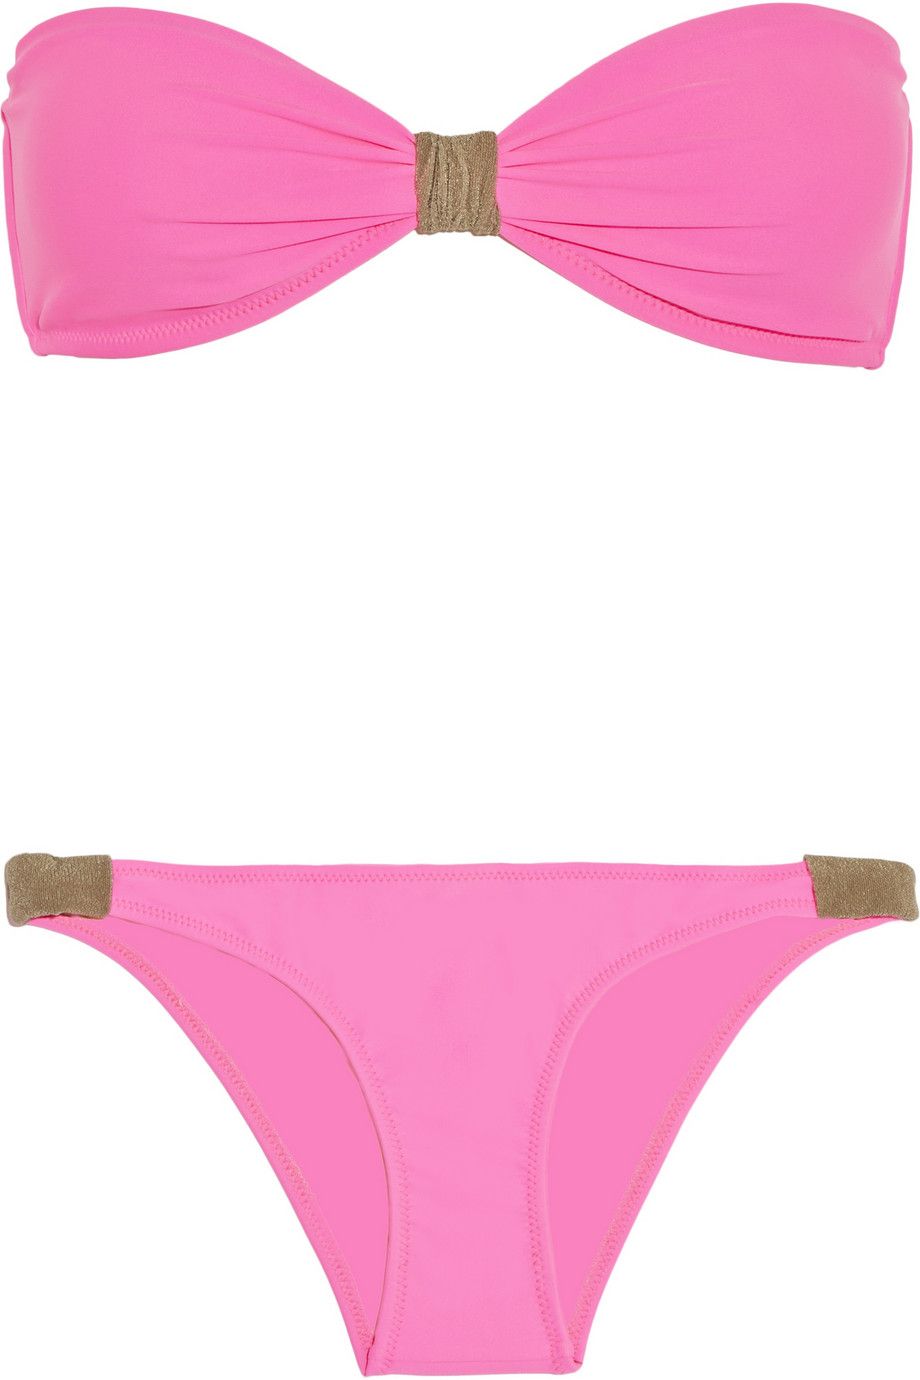 Heidi Klein Fez pink bikini from Net-a-Porter